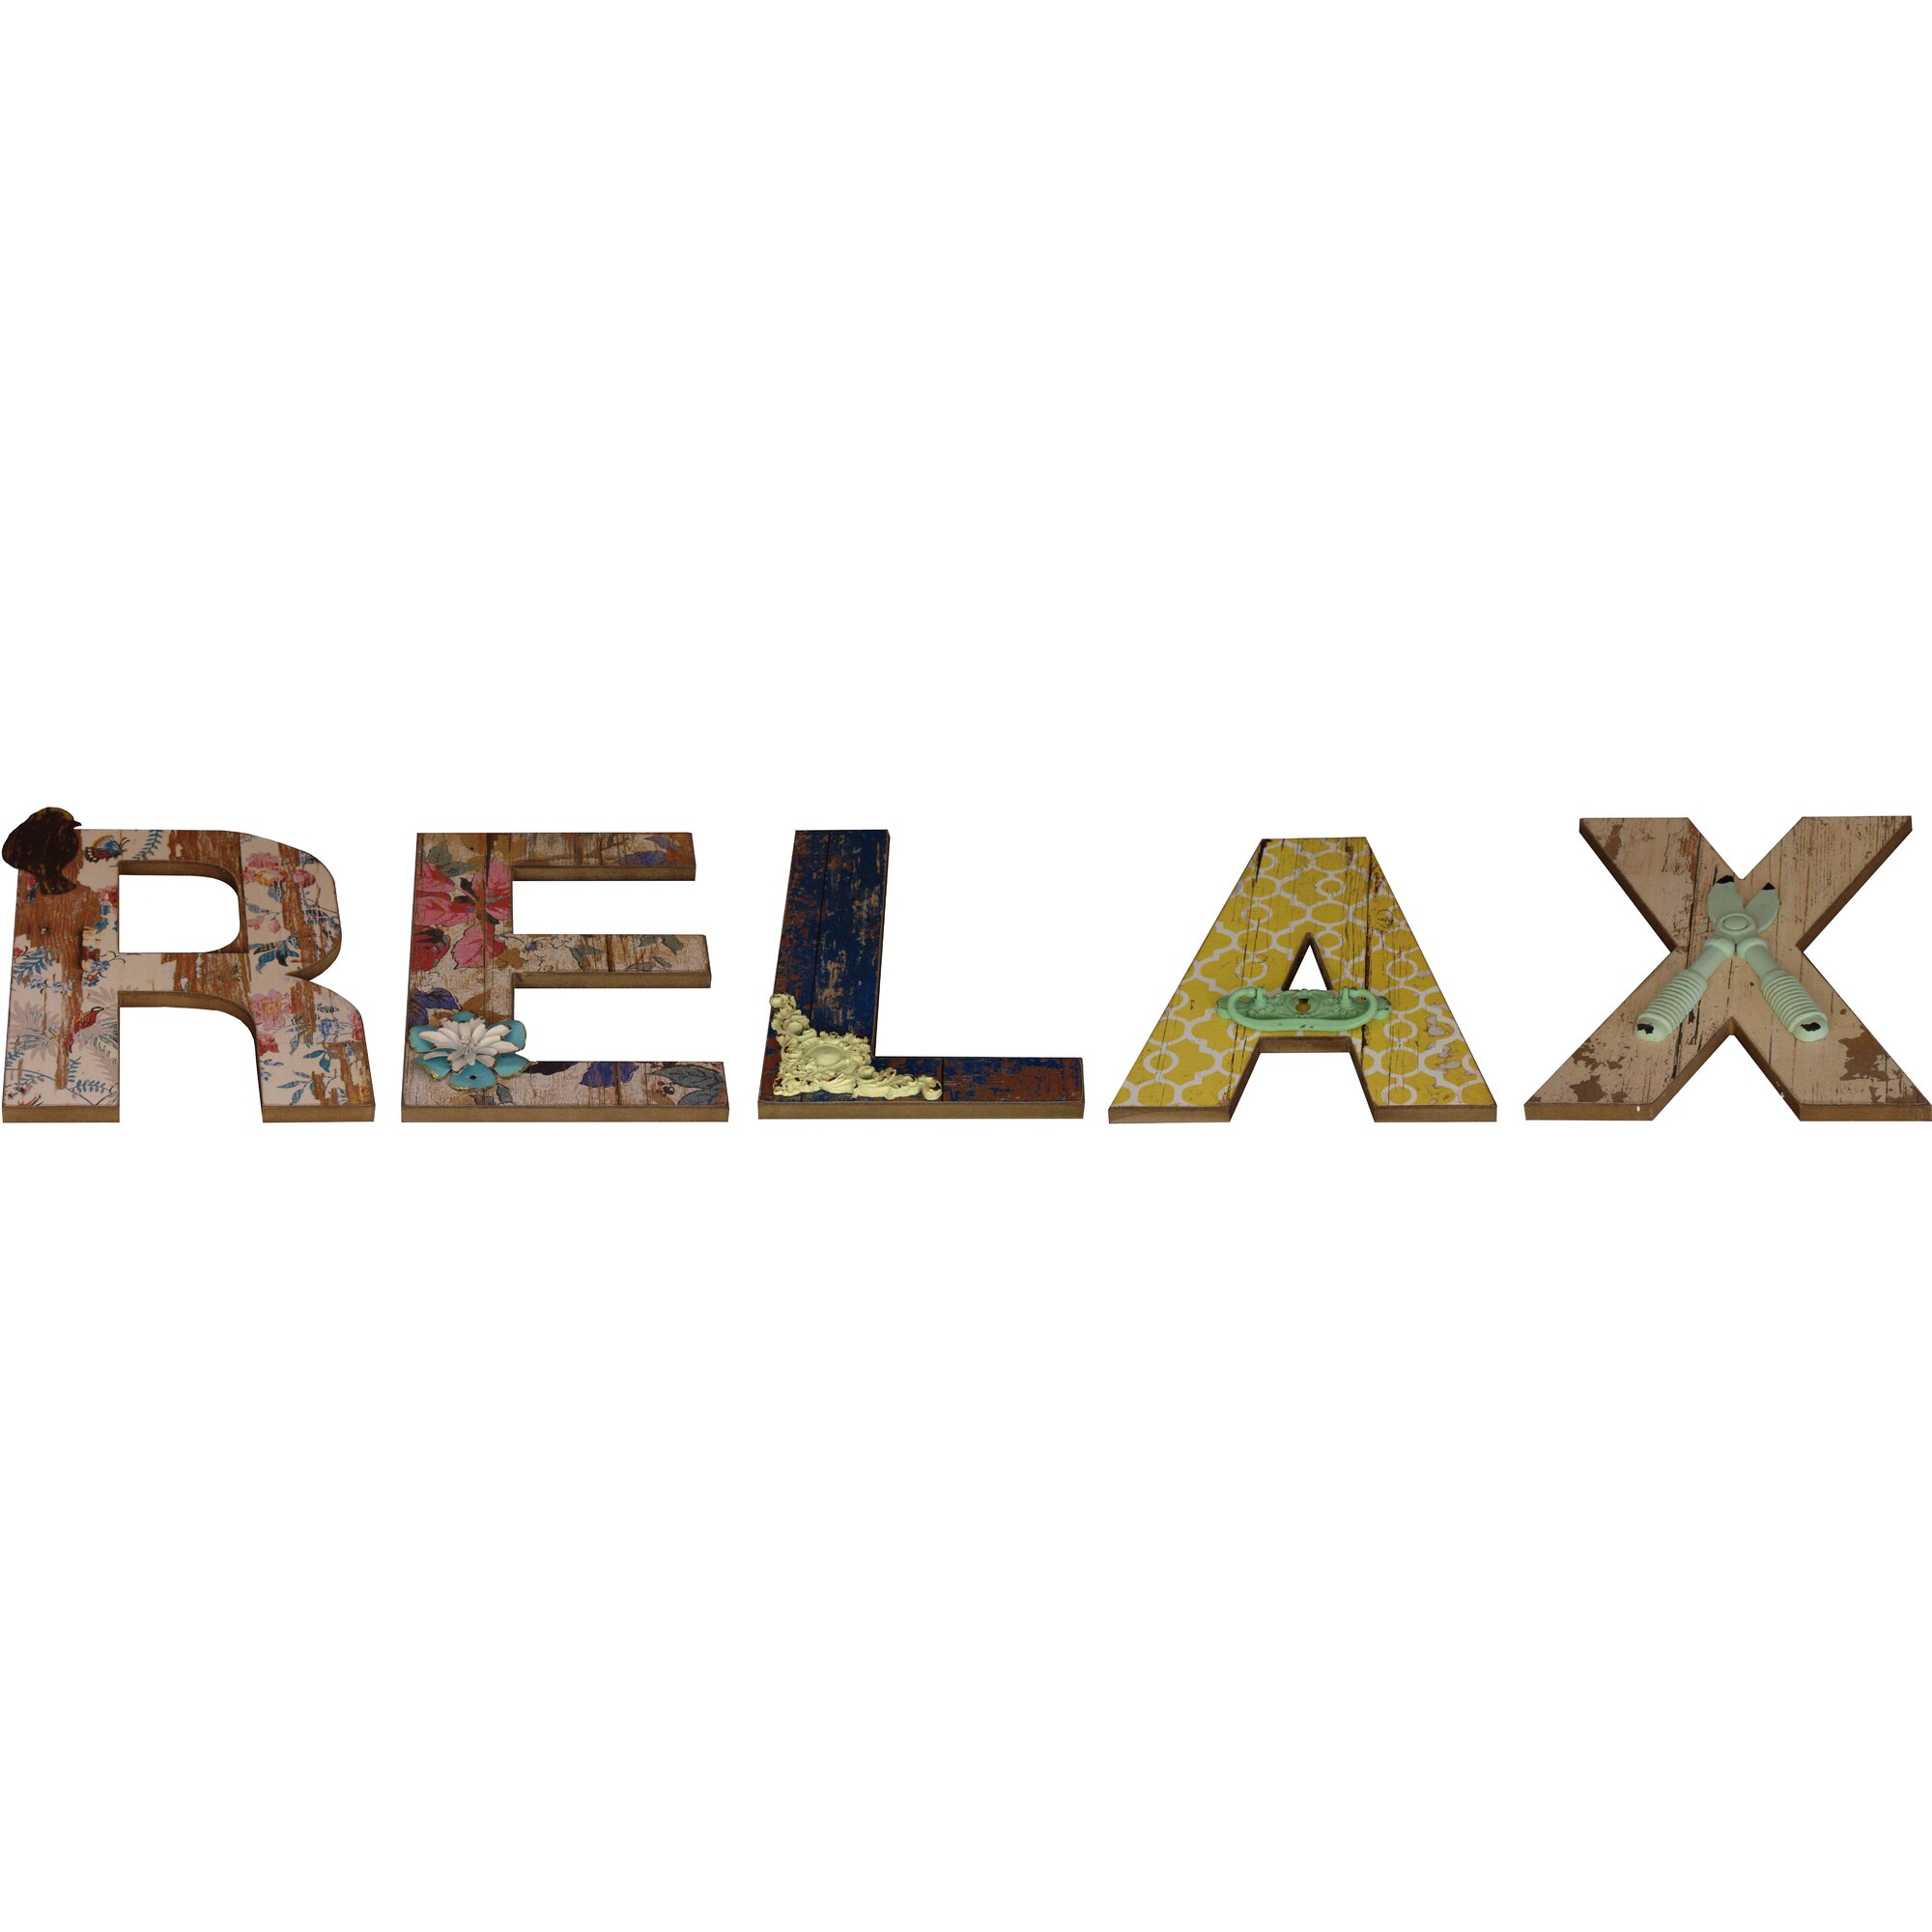 Boston International 5 Piece Relax Letter Block Set & Reviews | Wayfair